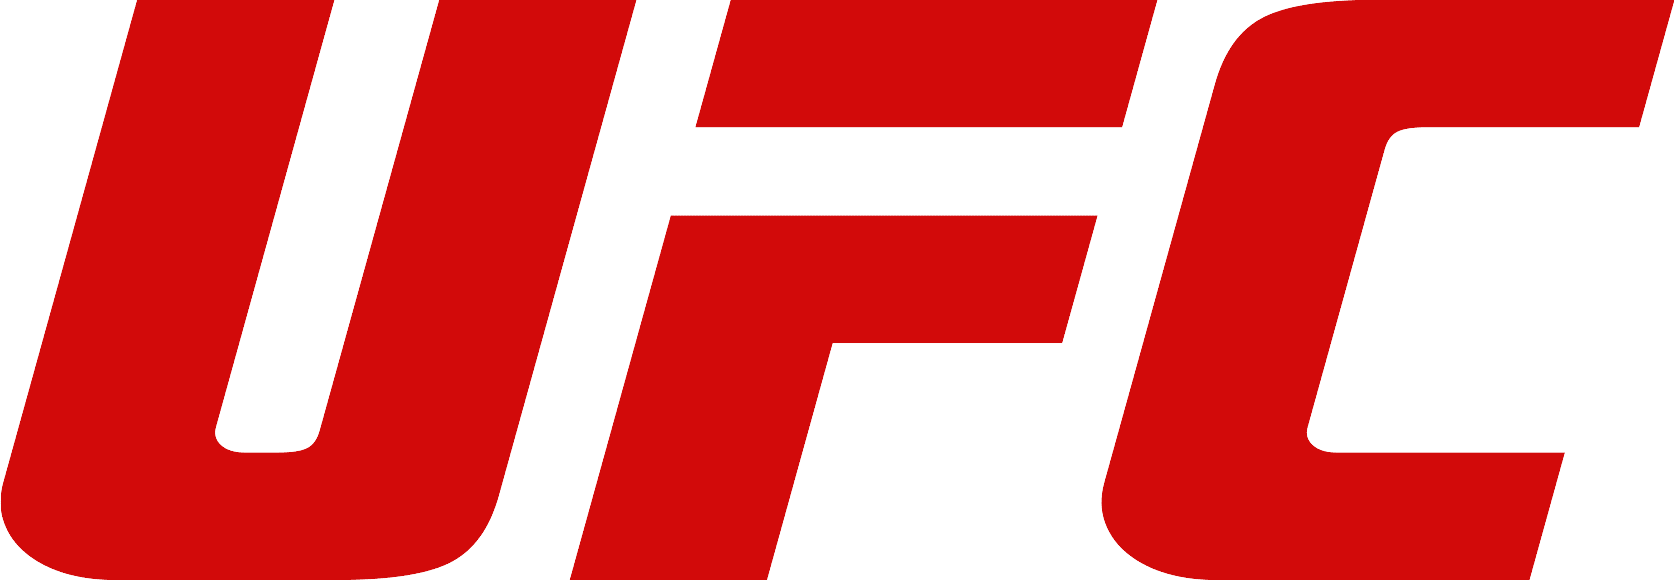 UFC_Logo-1